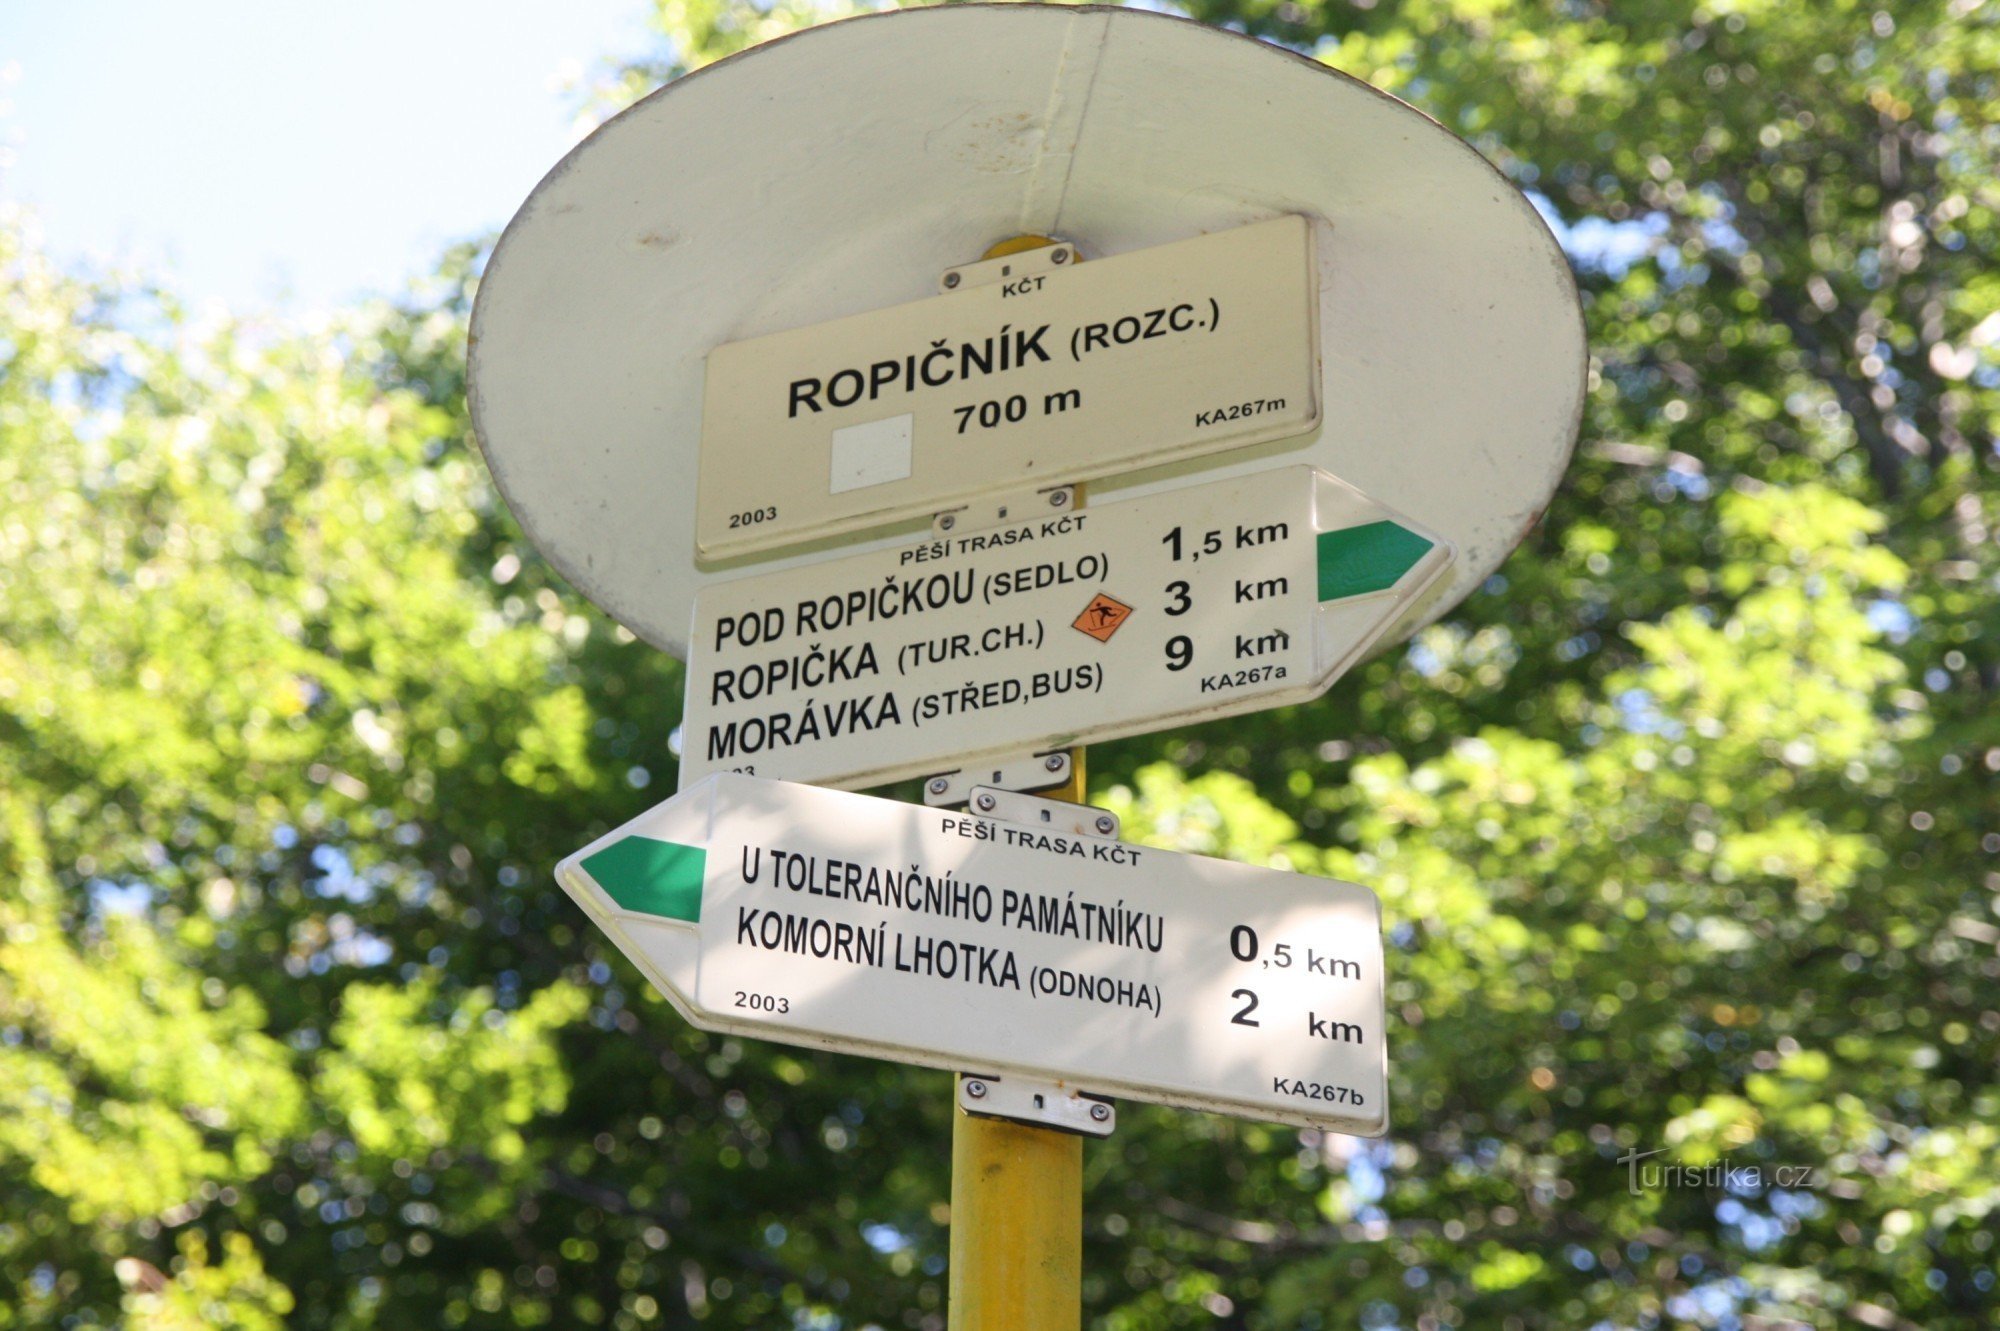 道標 ROPICNIK 9 年 2012 月